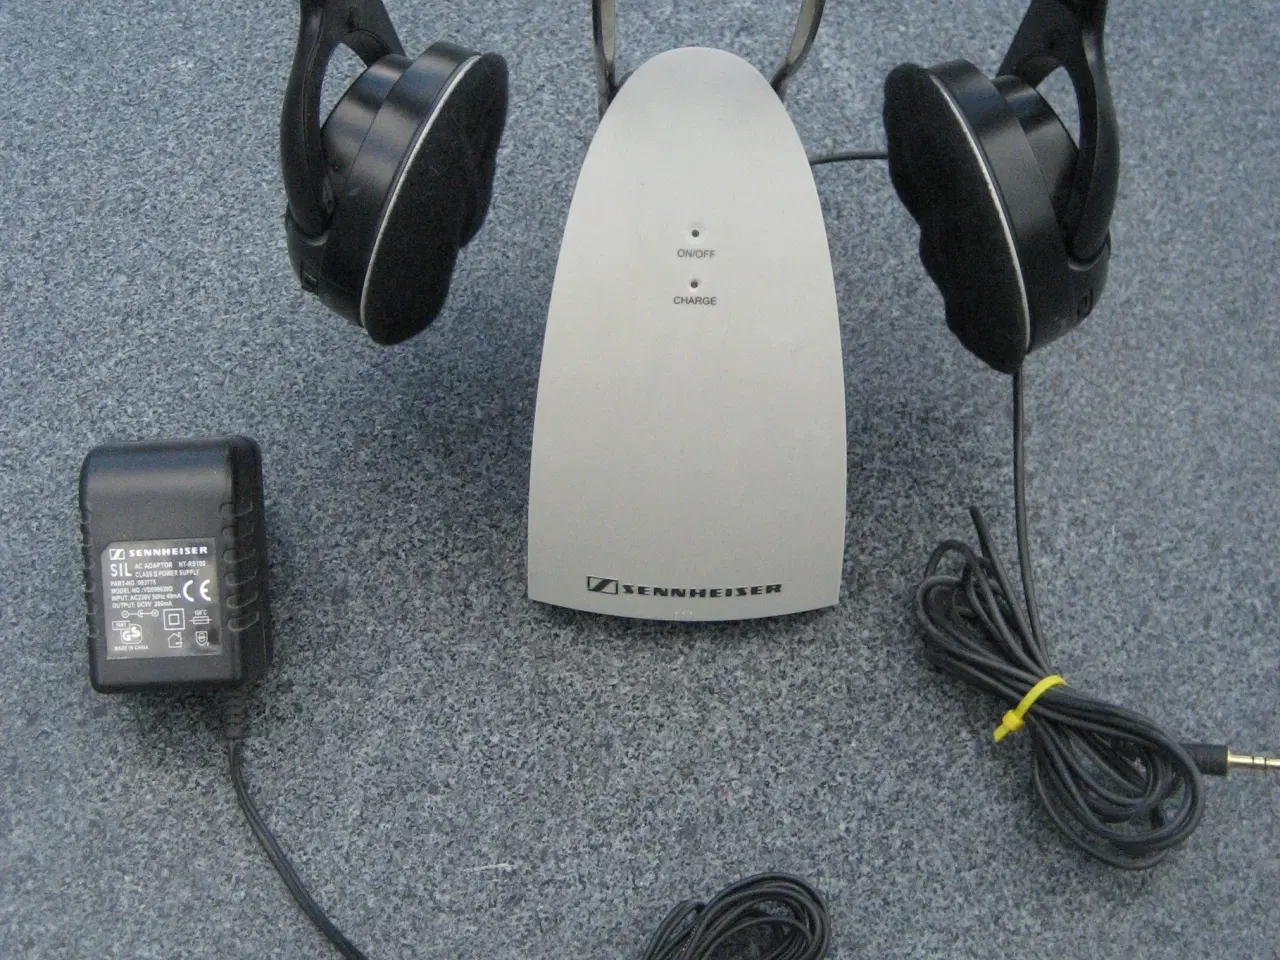 Billede 1 - Trådløse Sennheiser-hovedtelefoner sælges